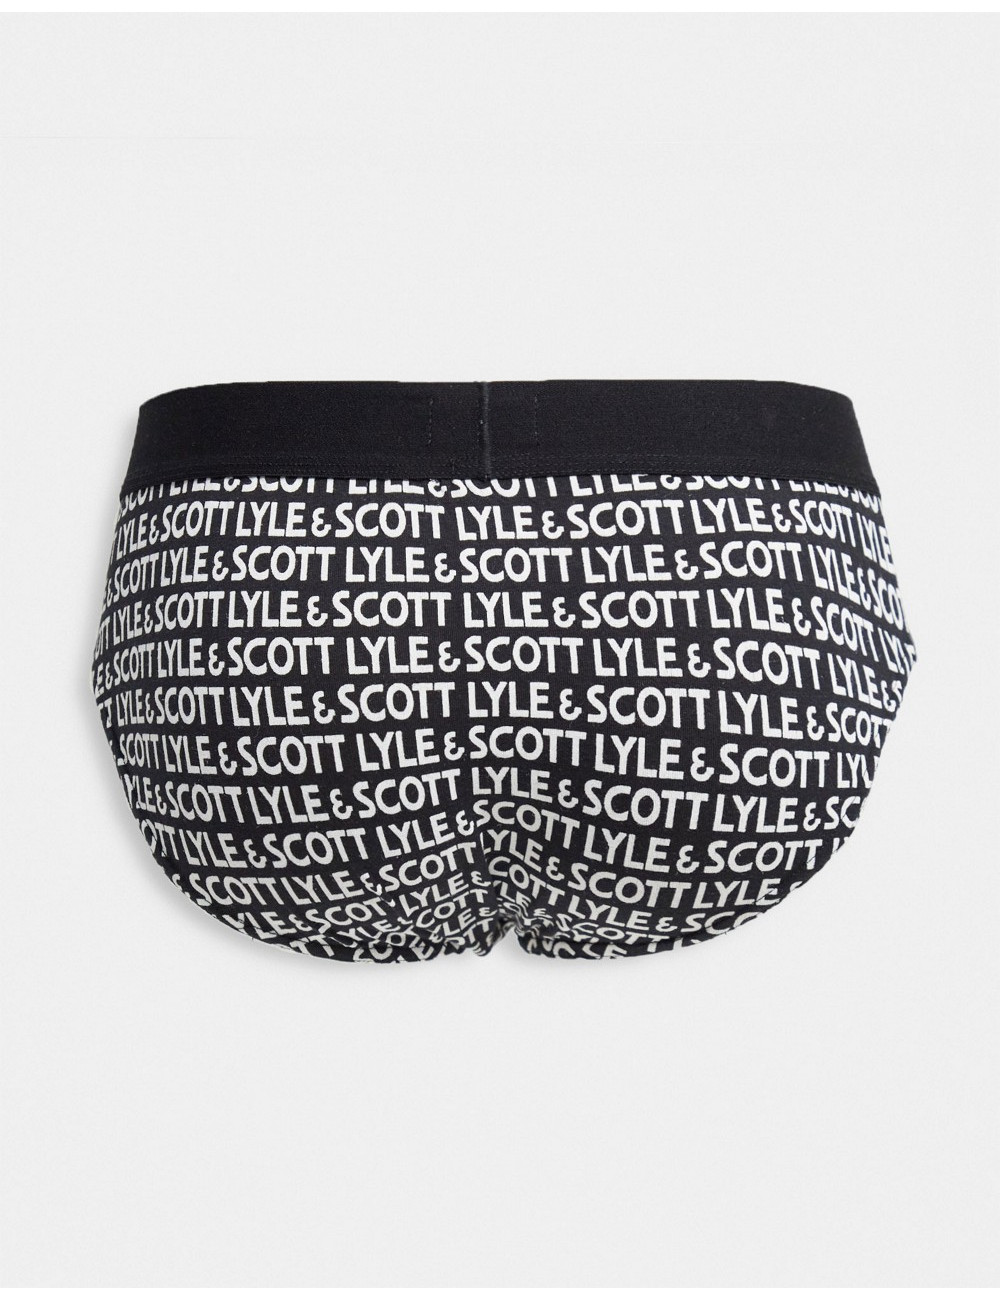 Lyle & Scott Bodywear 3...